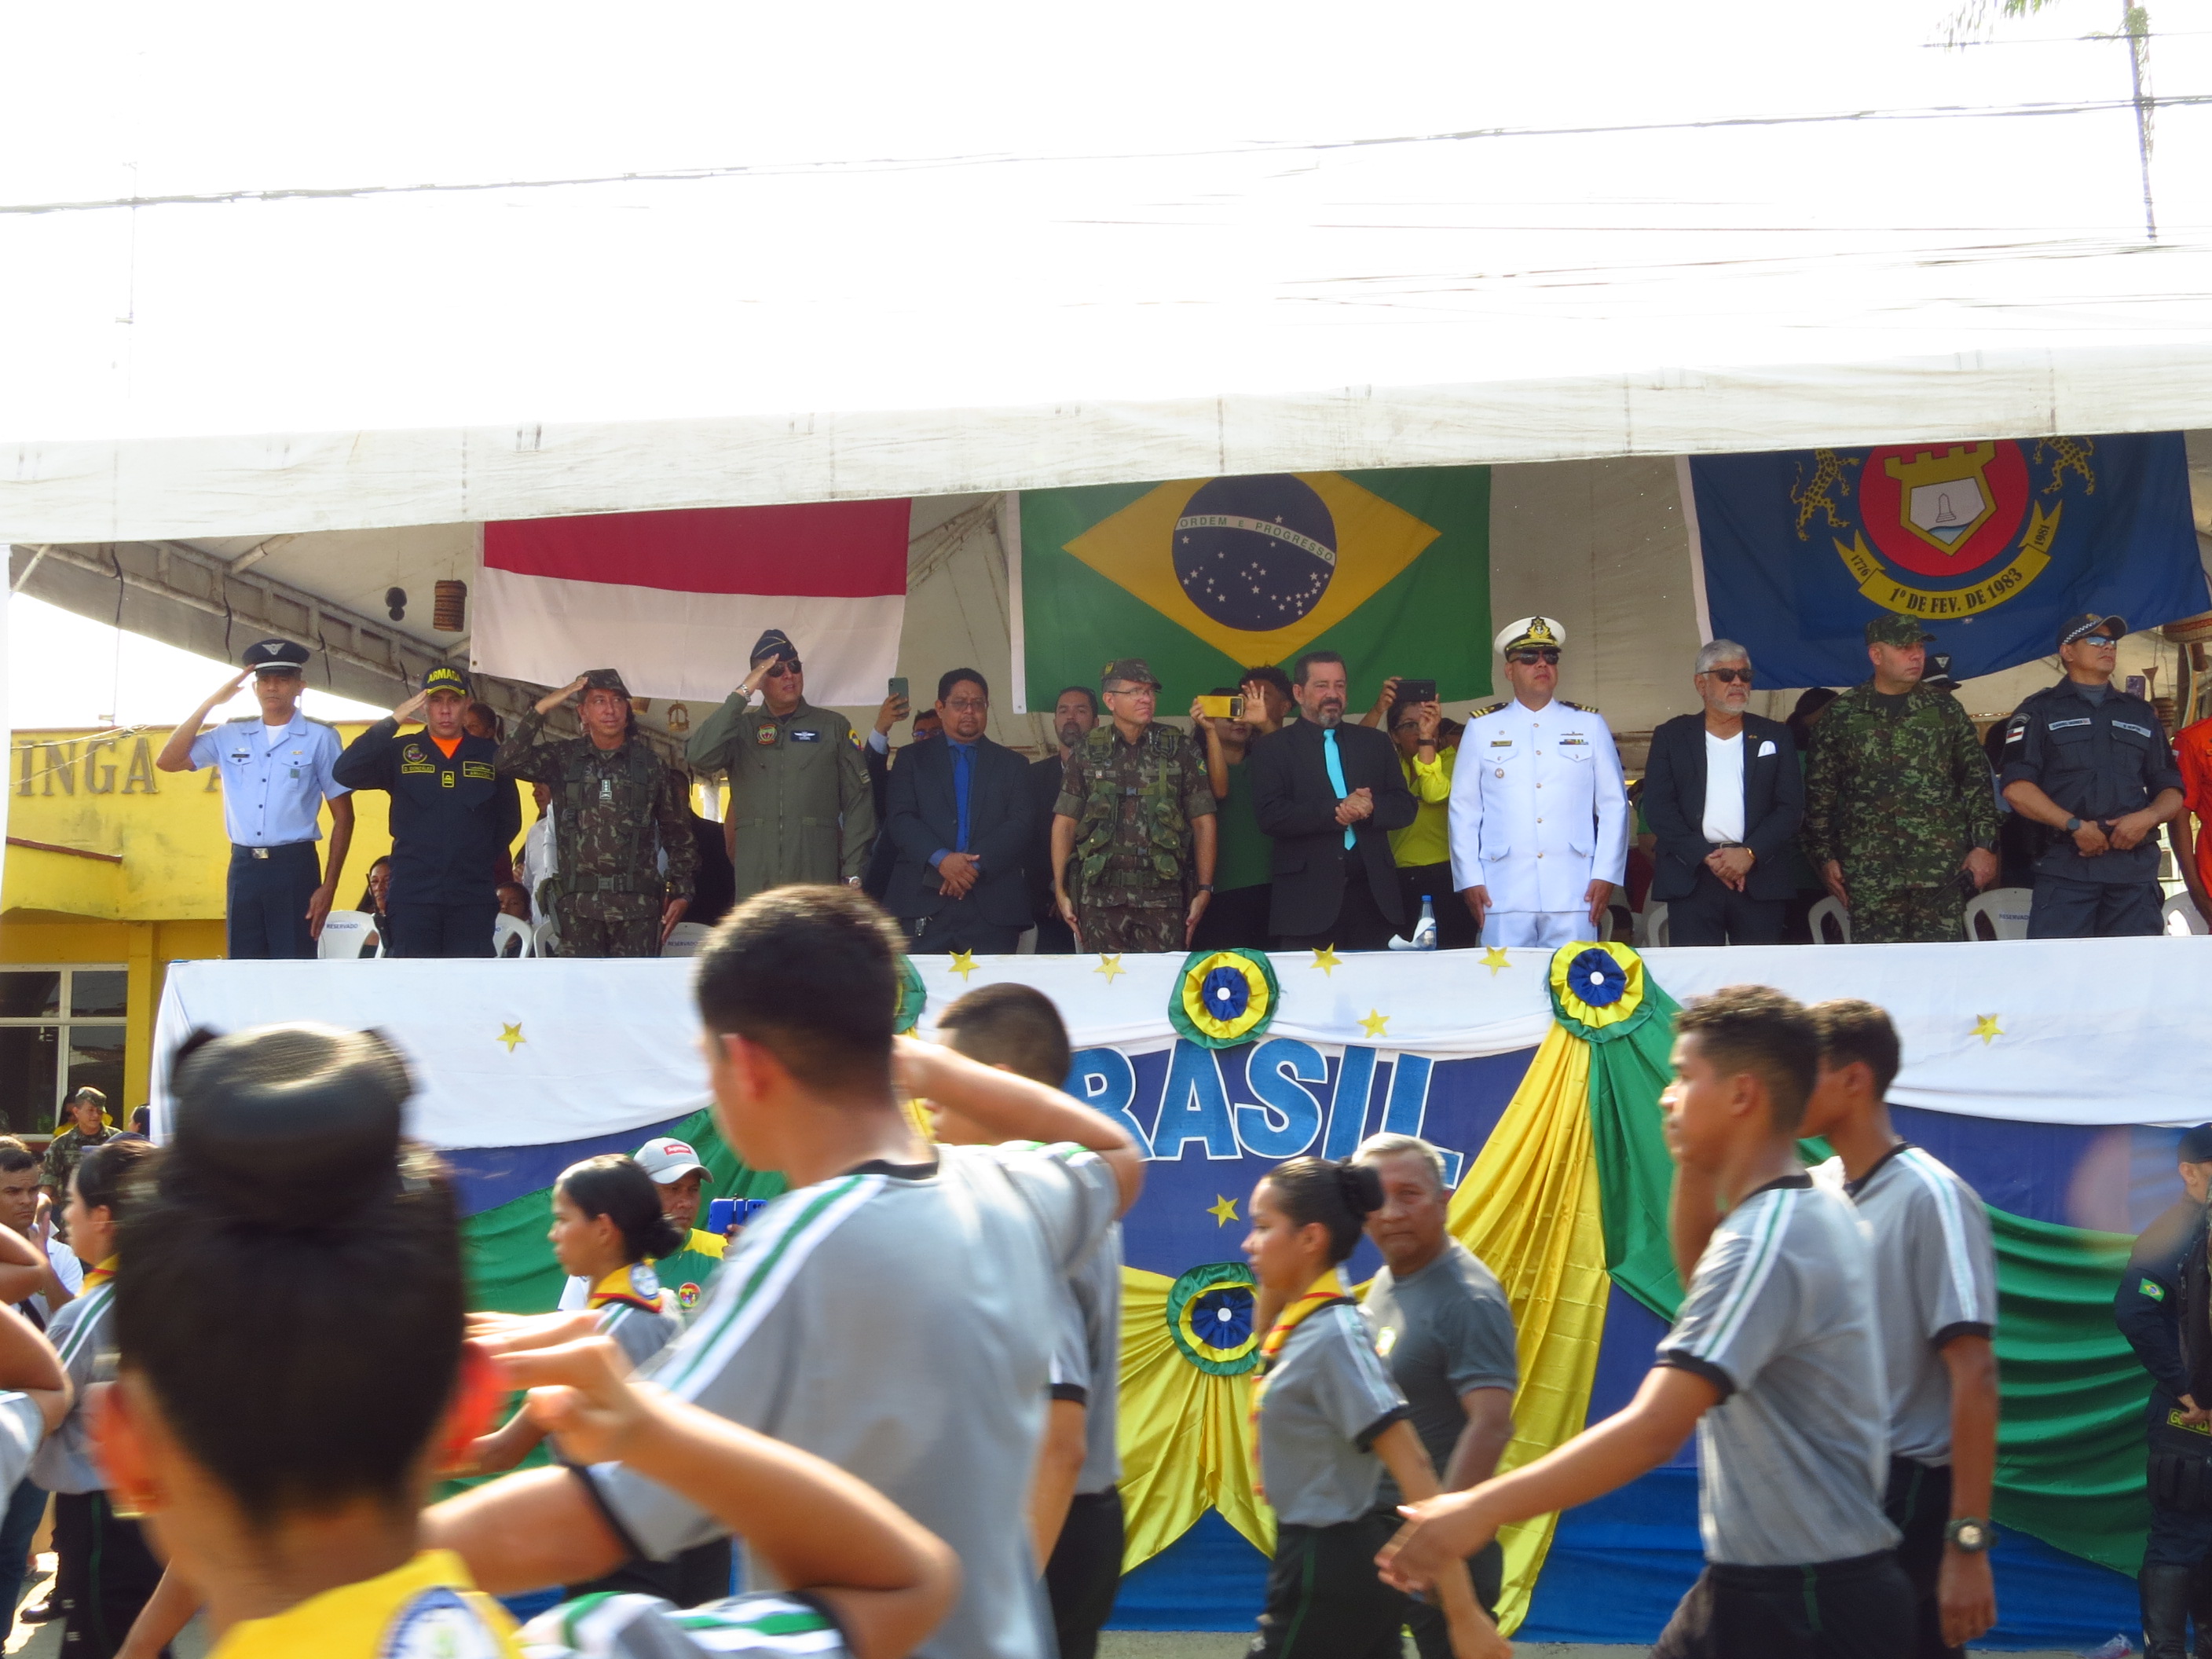 Como muestra de amistad y hermandad se conmemoró los 201 años de libertad de Brasil.